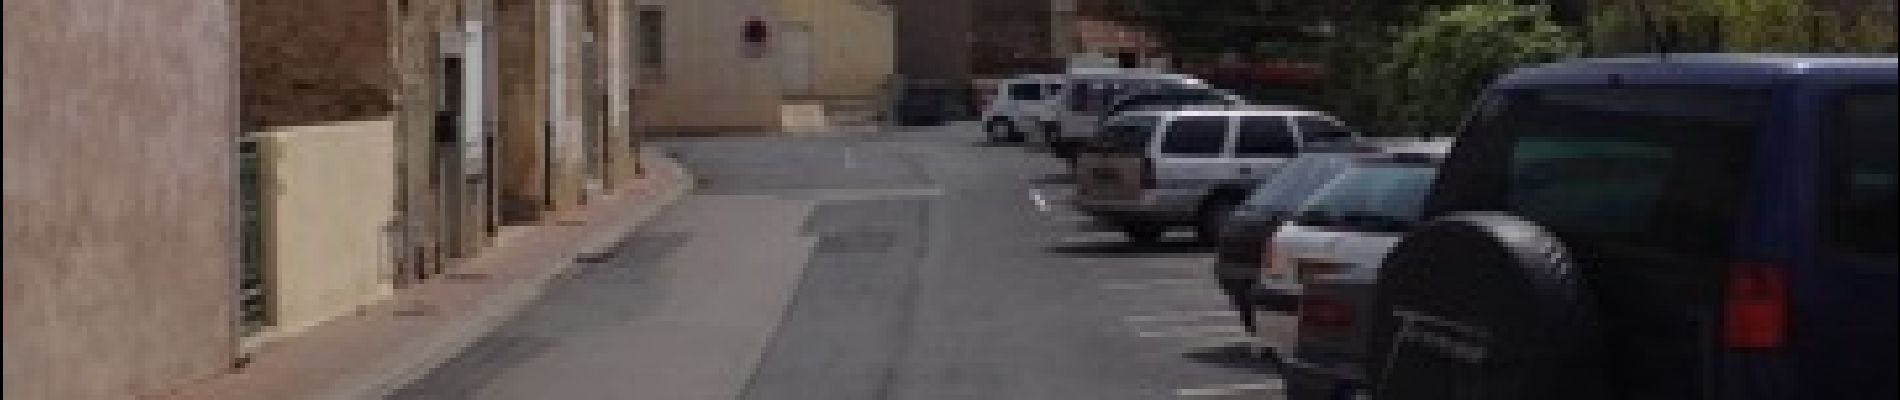 Point d'intérêt Argeliers - Parking Départ - Photo